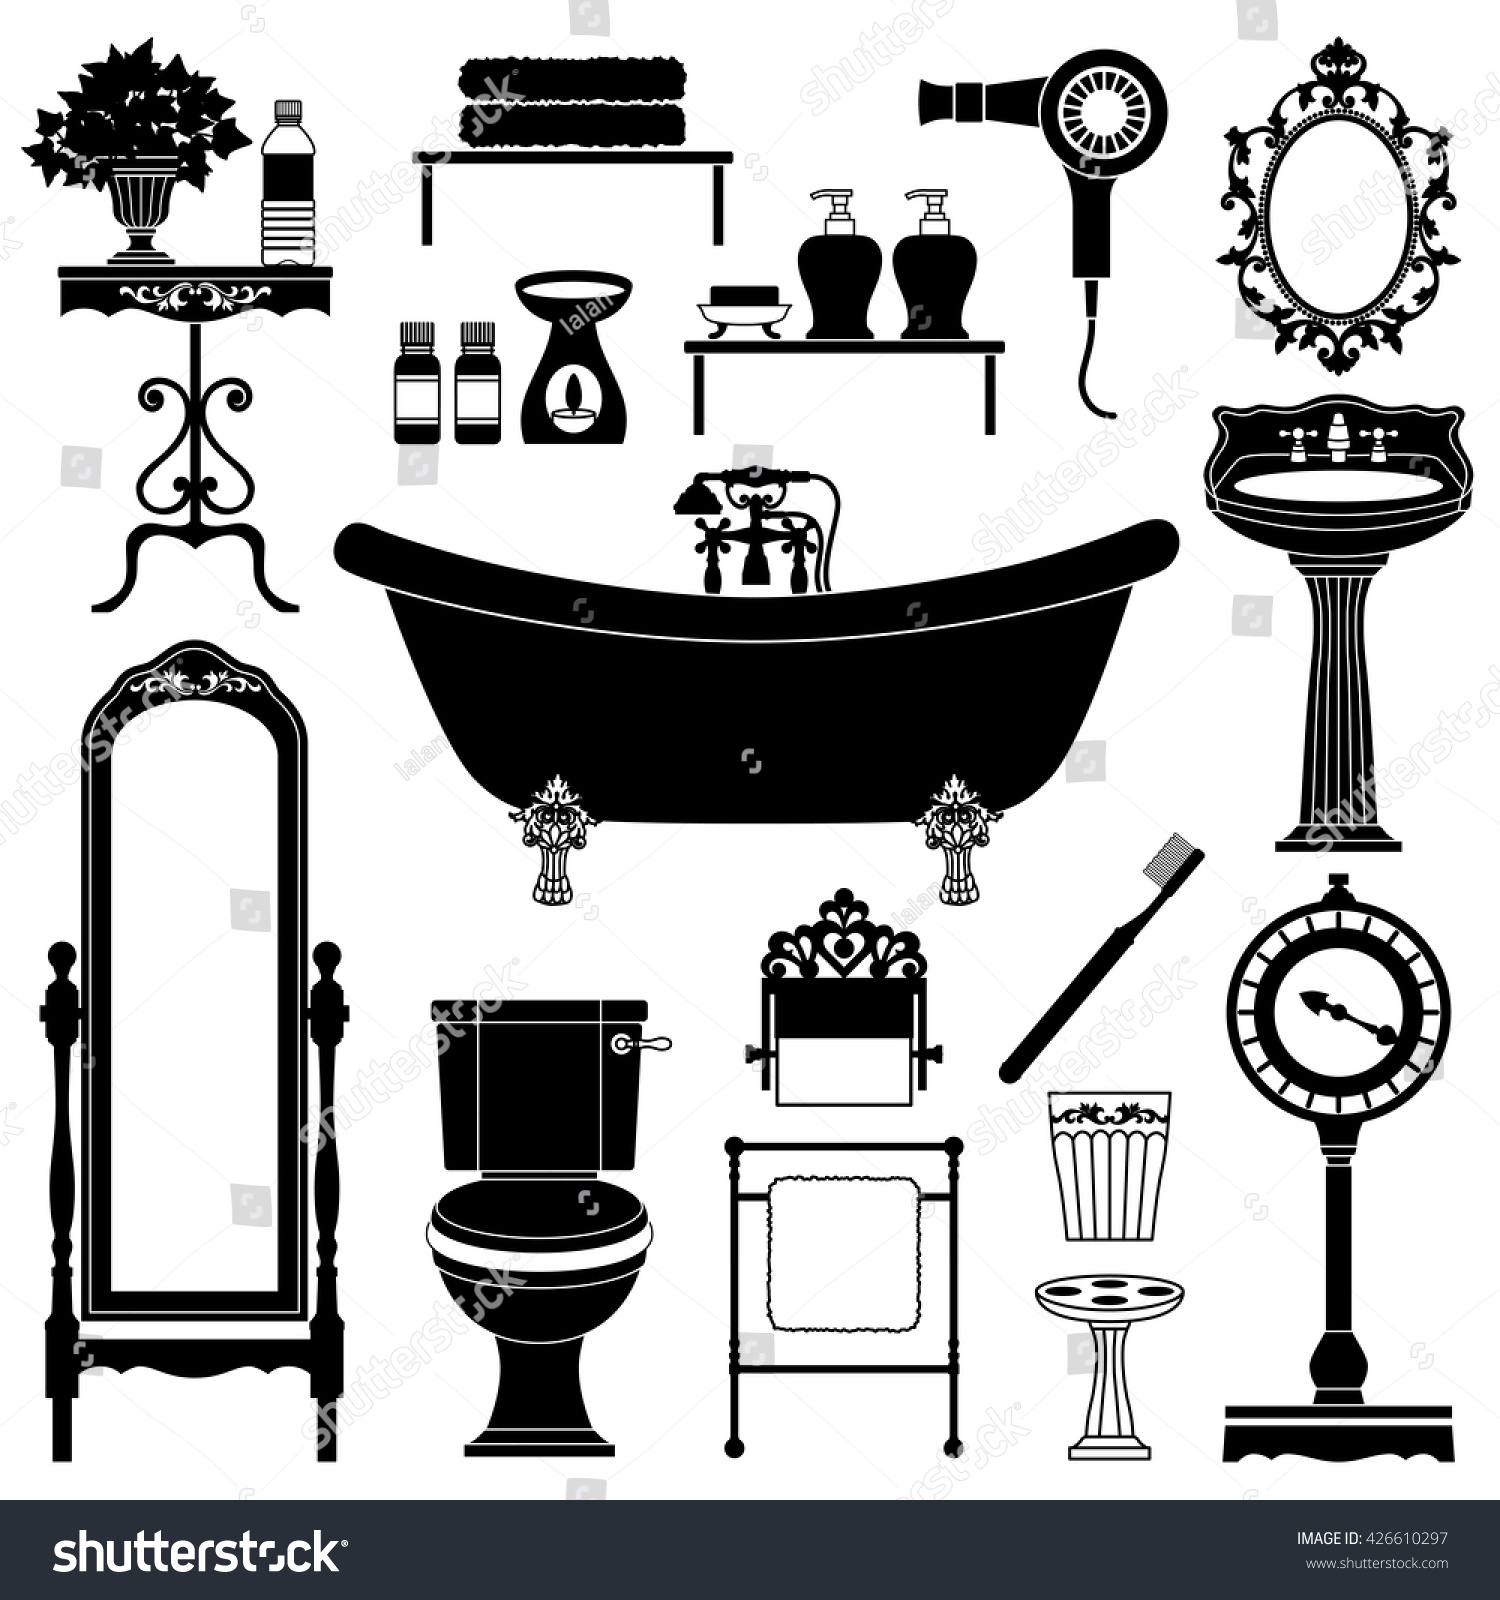 Download Antique Furniture Bathroom Stock Vector 426610297 - Shutterstock